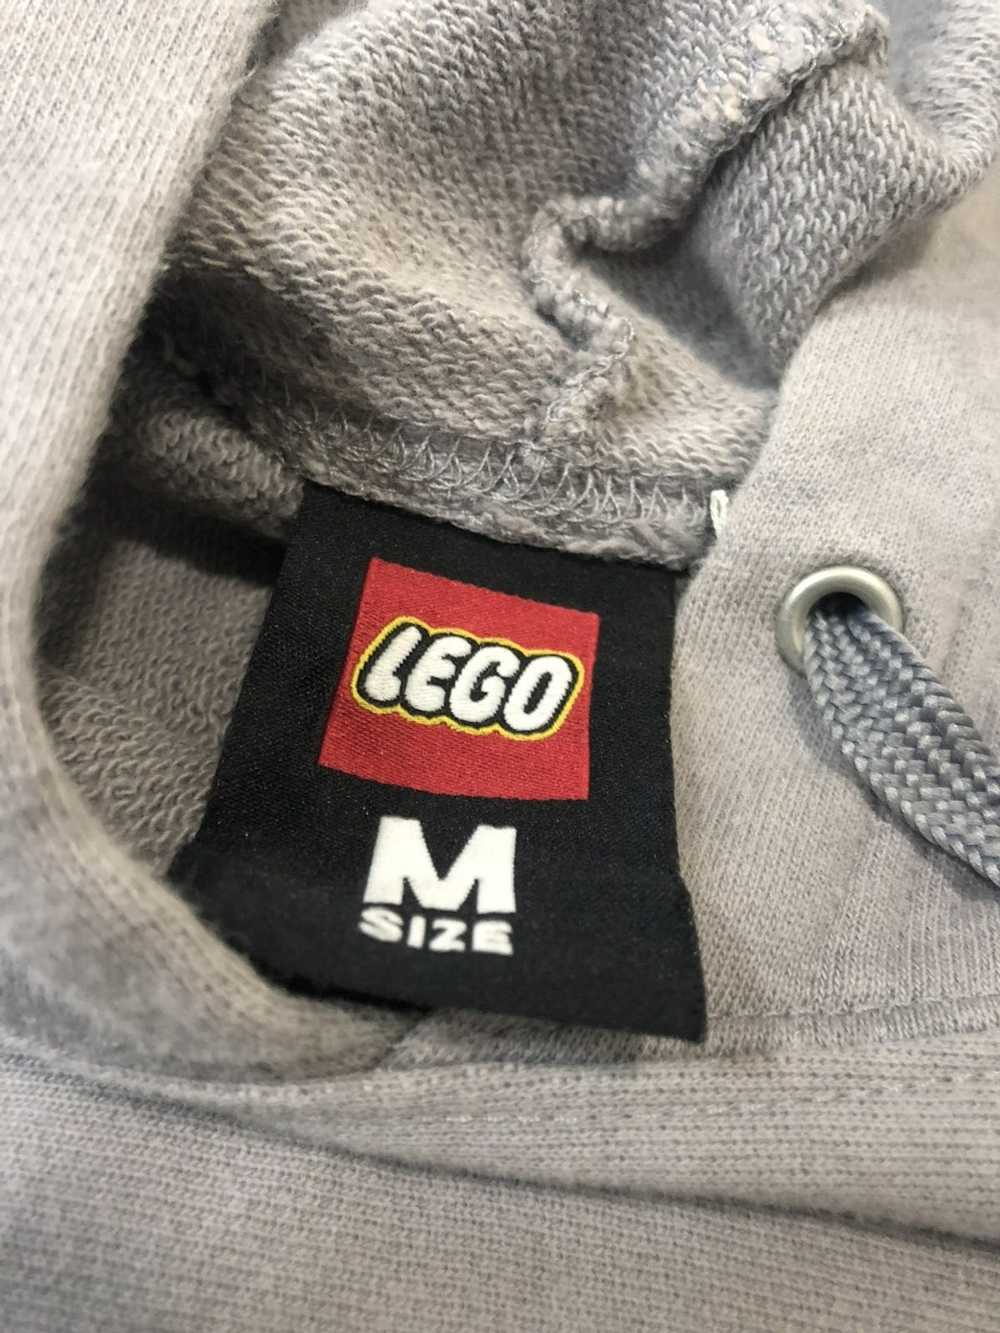 Lego Lego hoodie sweatshirt - image 9